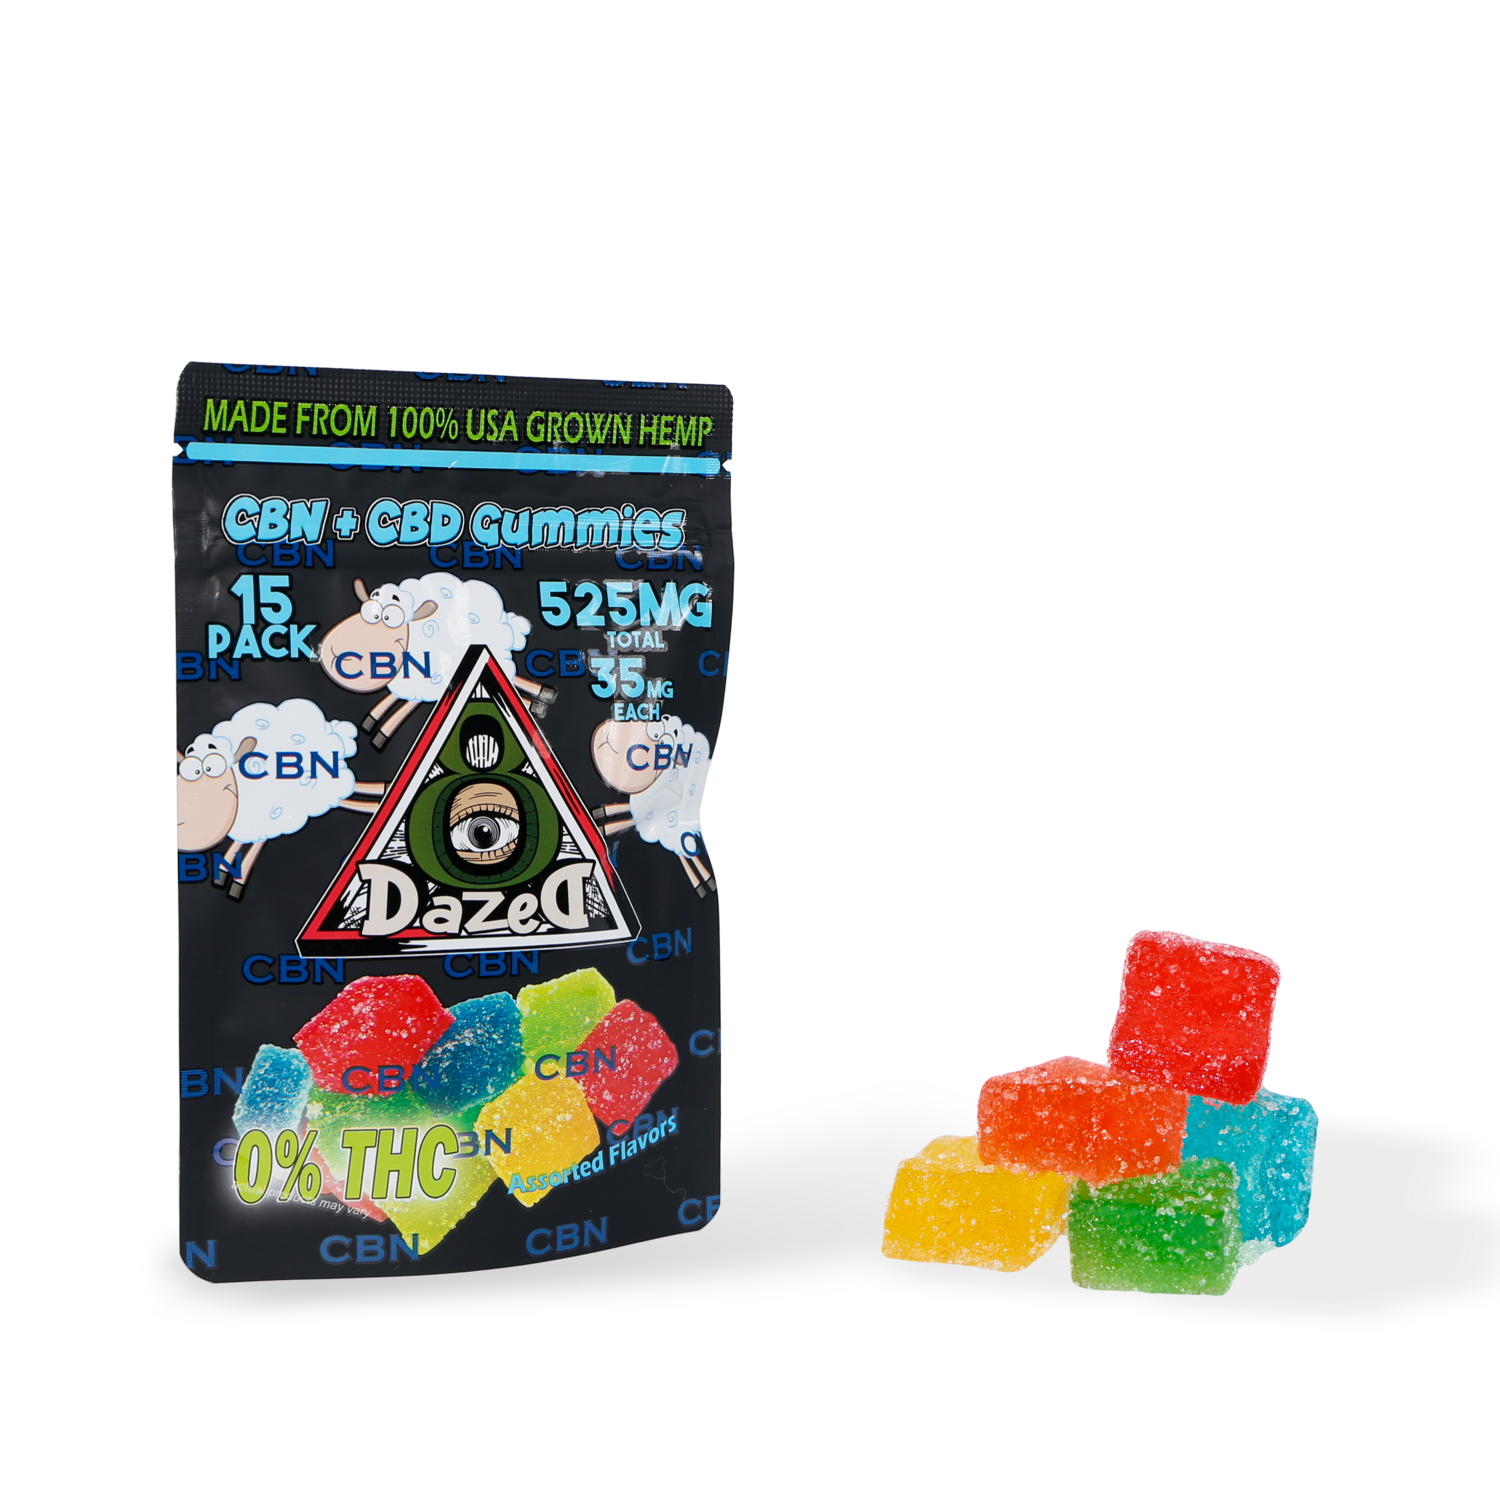 Dazed8 CBD + CBN Gummies - 15PC (35MG)